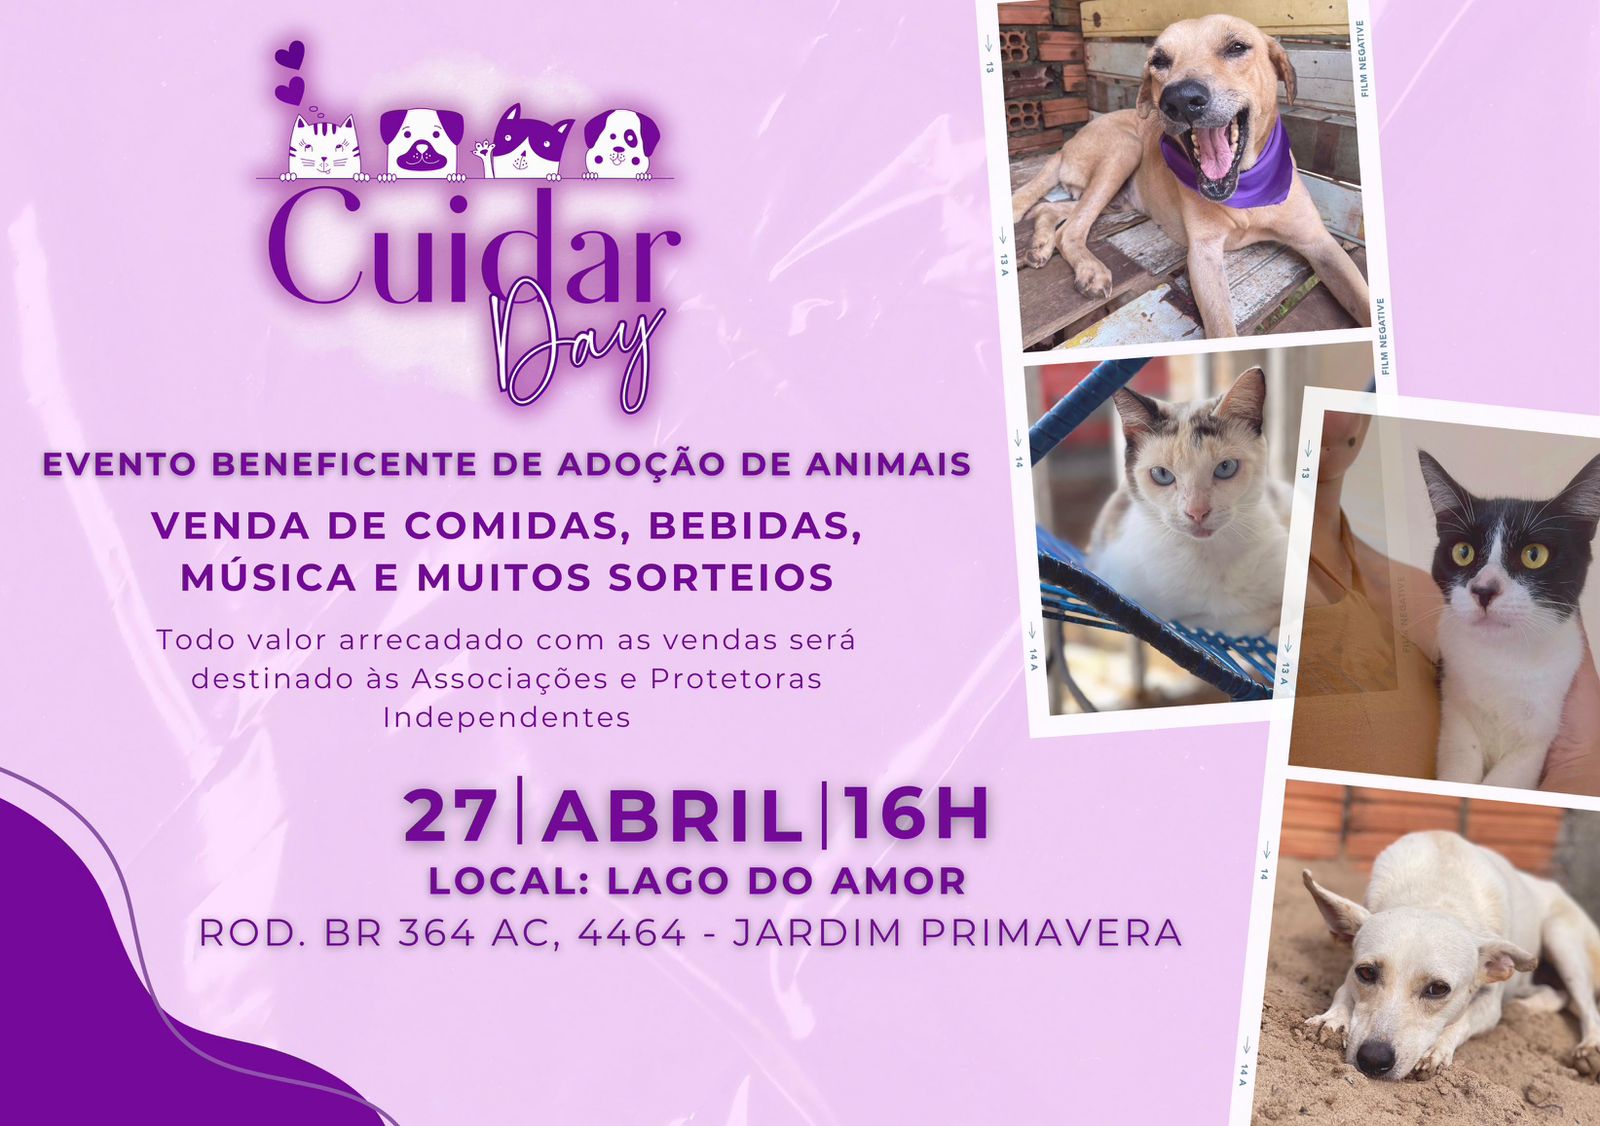 Evento de adoção de animais no Lago do Amor celebra um ano do Projeto Cuidar, idealizado por Jarude